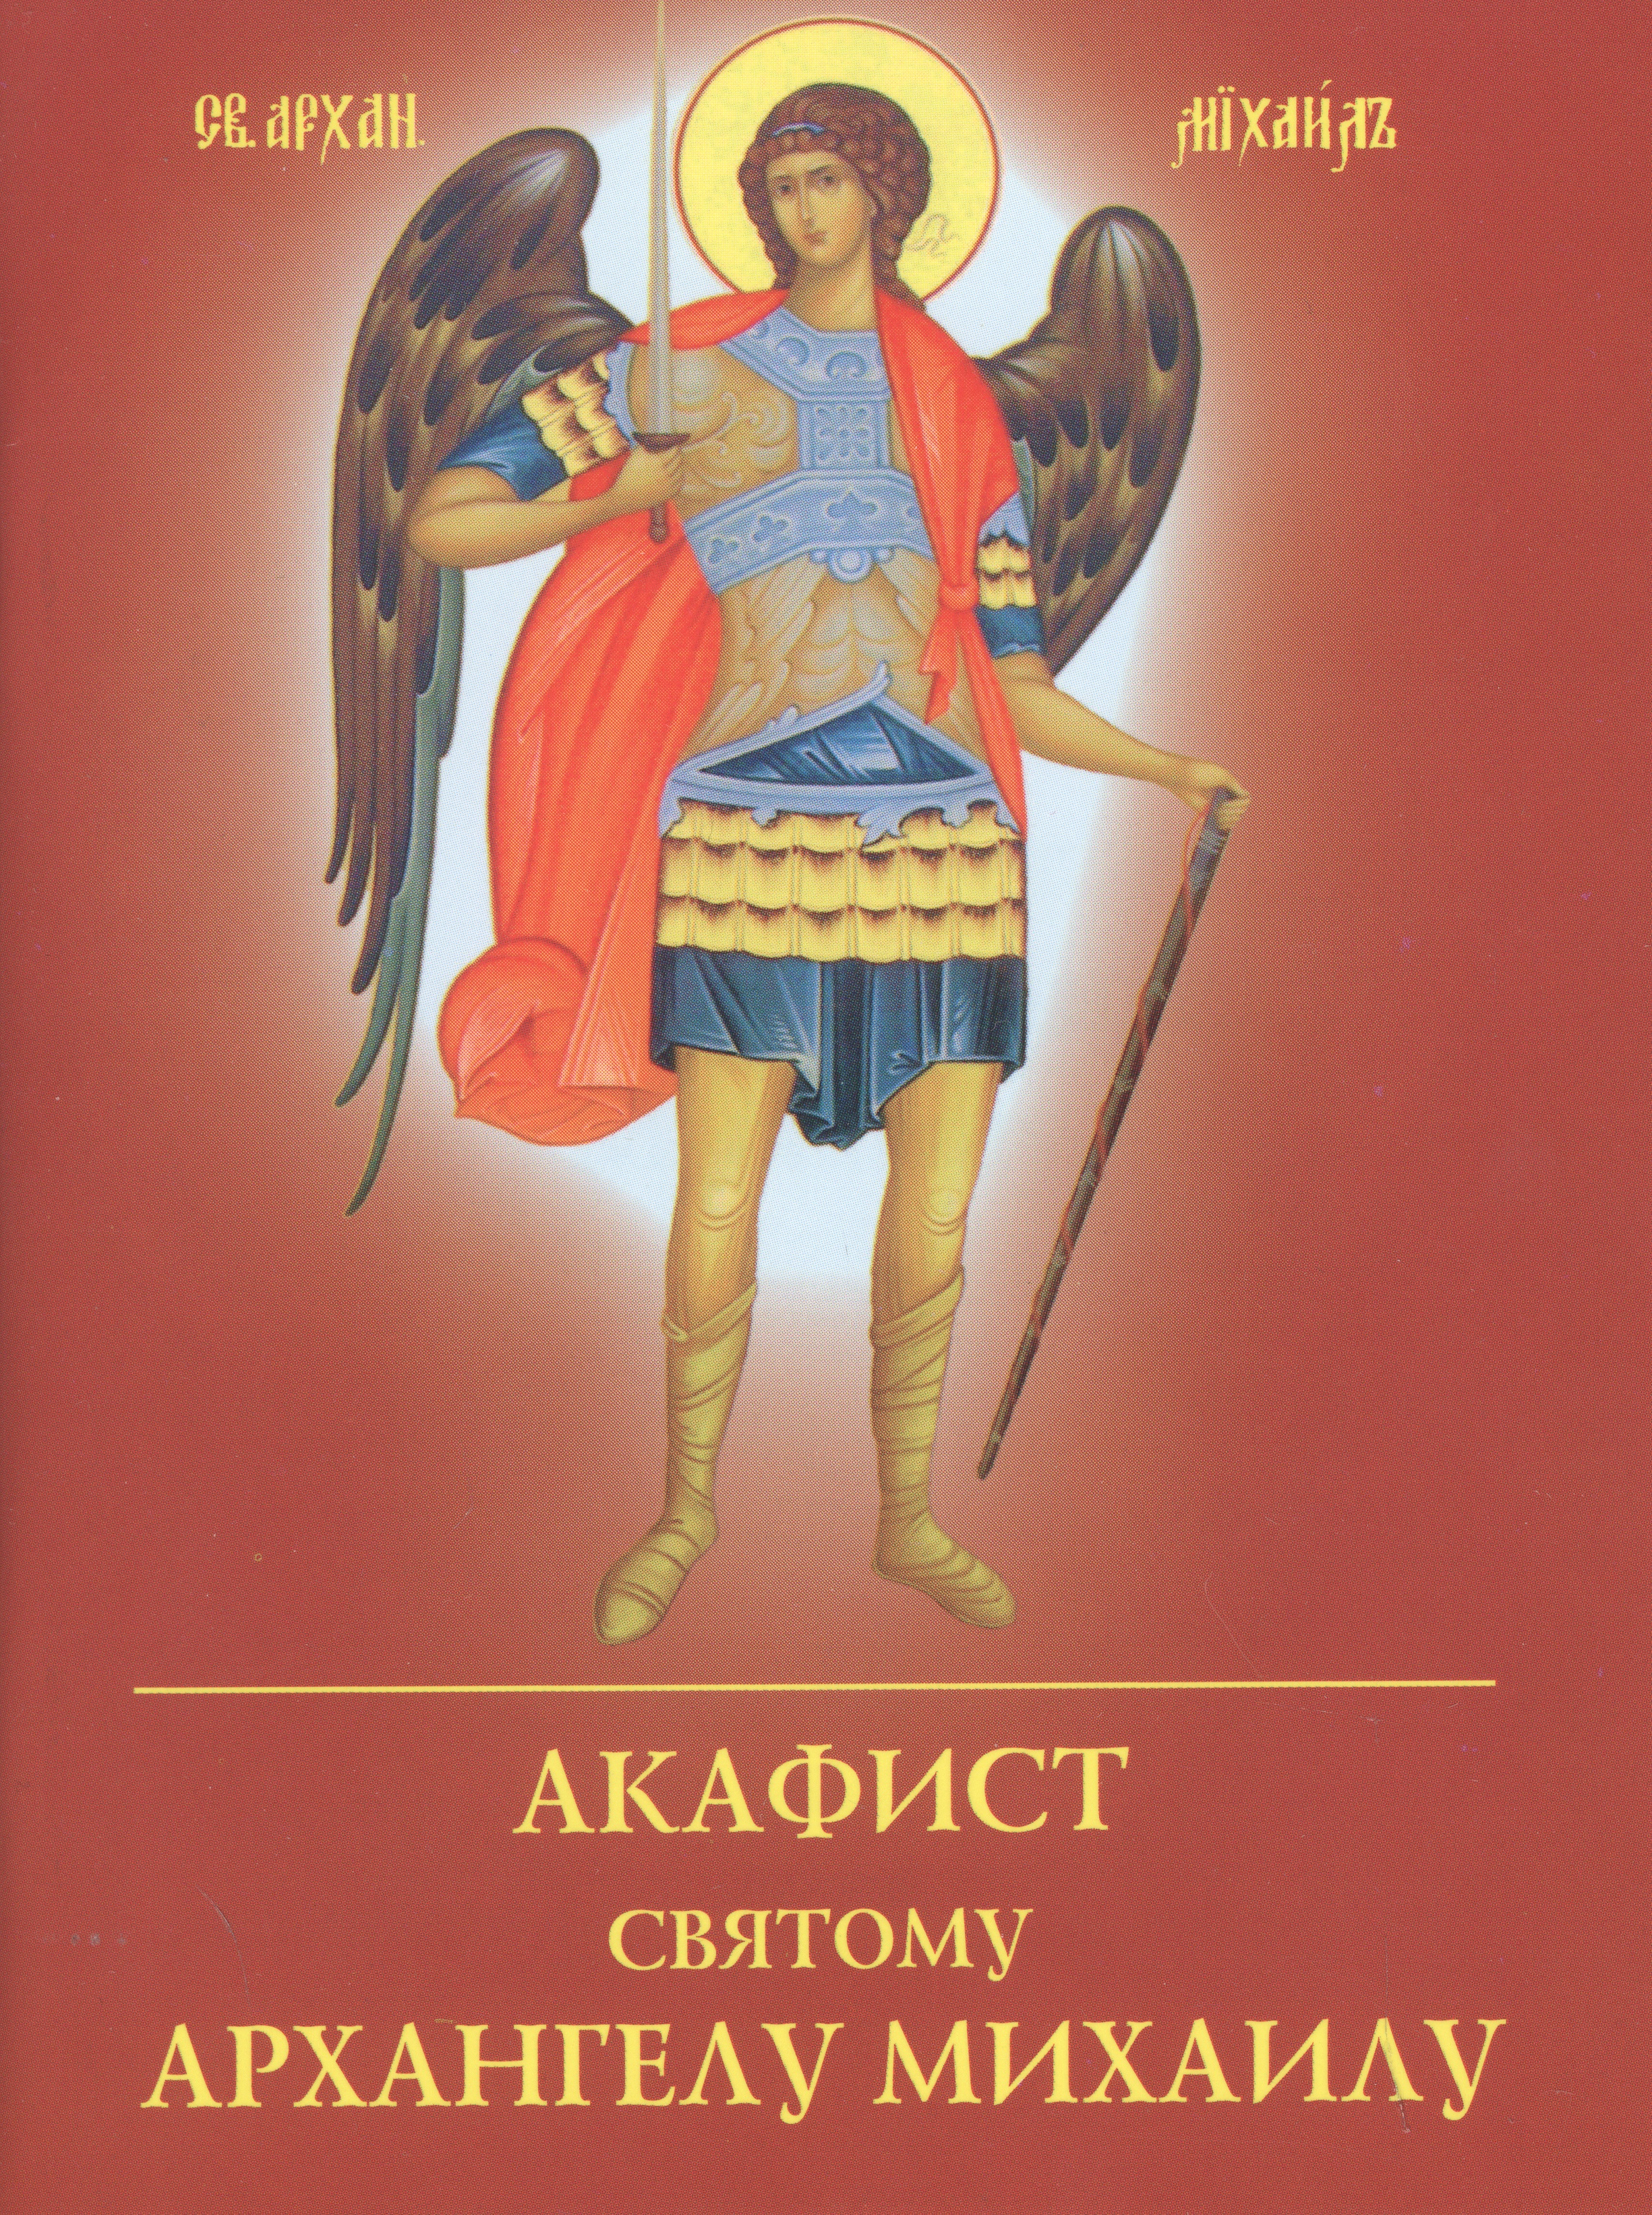 Акафист Архангелу Михаилу акафист святому архангелу михаилу